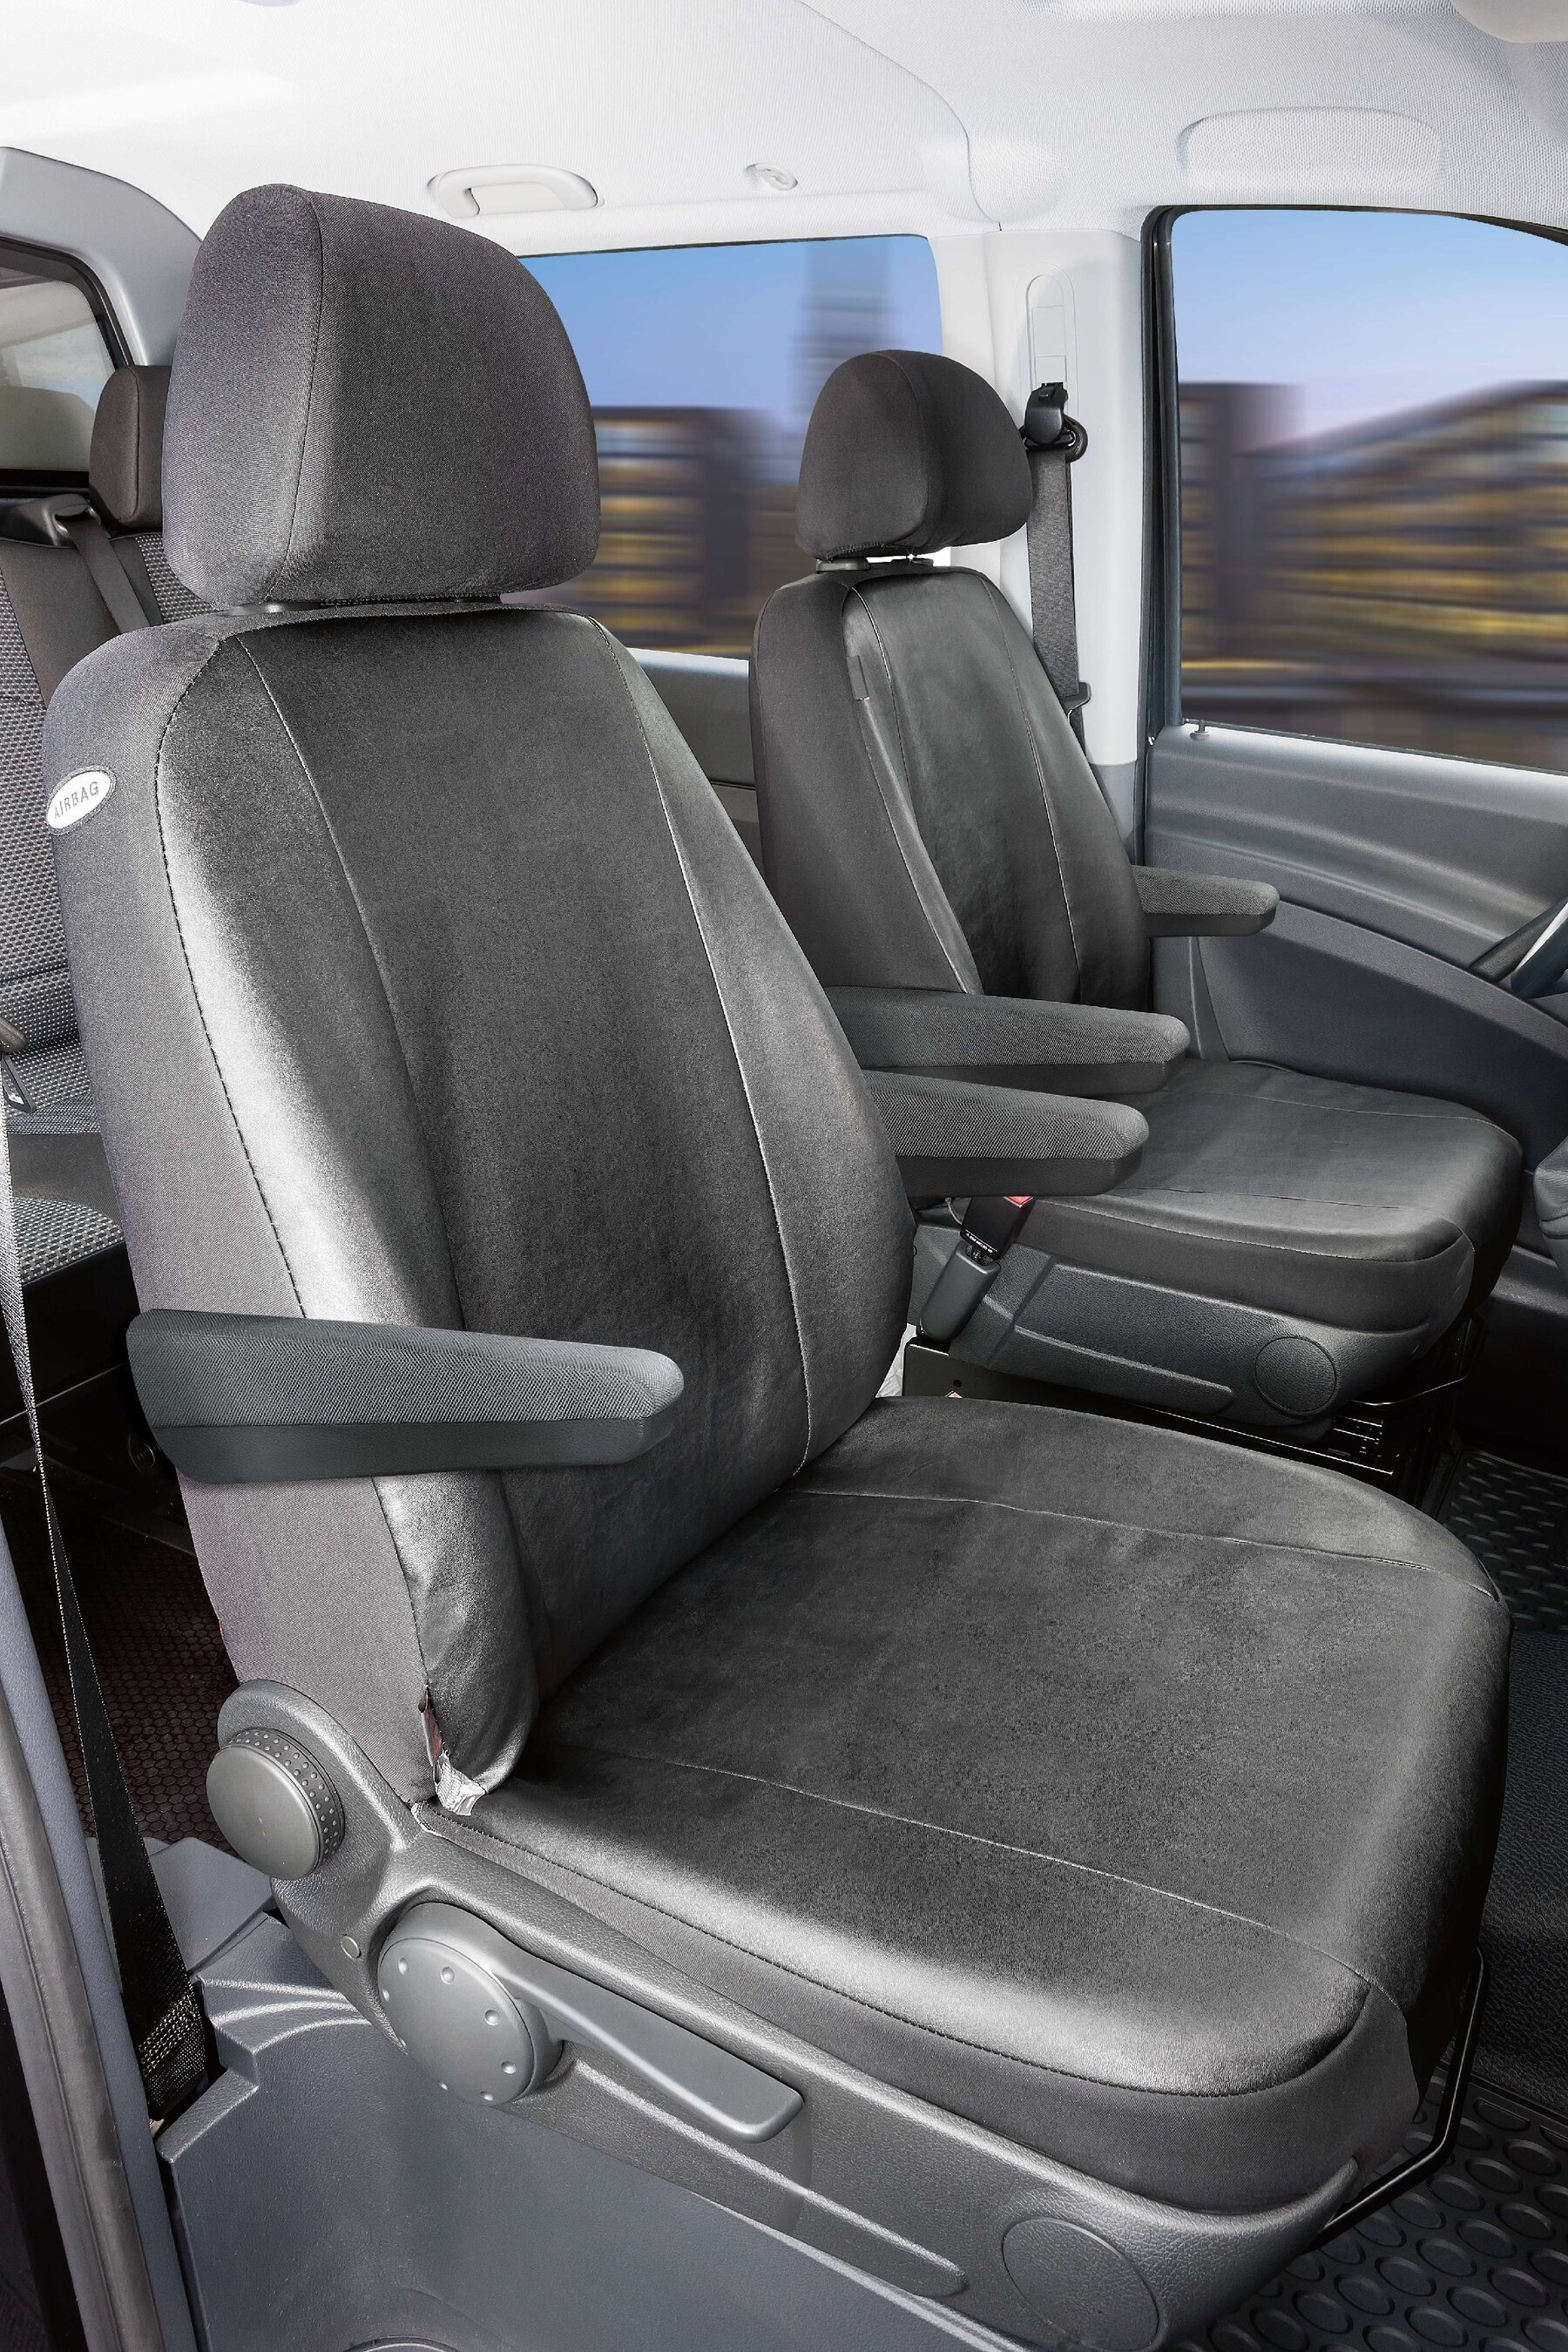 Housse de siège Transporter en simili cuir pour Mercedes-Benz Viano/Vito, 2 sièges simples avec accoudoir à l'intérieur et à l'extérieur